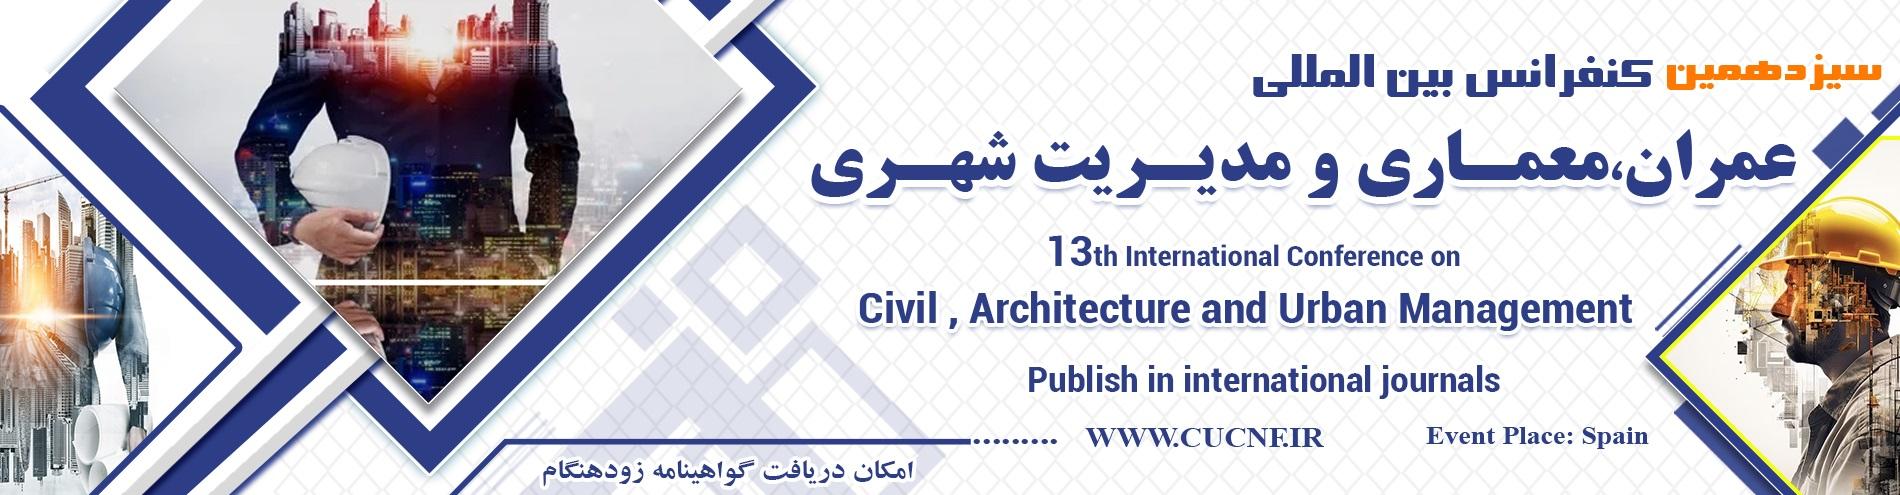 کنفرانس بین المللی عمران،معماری و مدیریت شهری